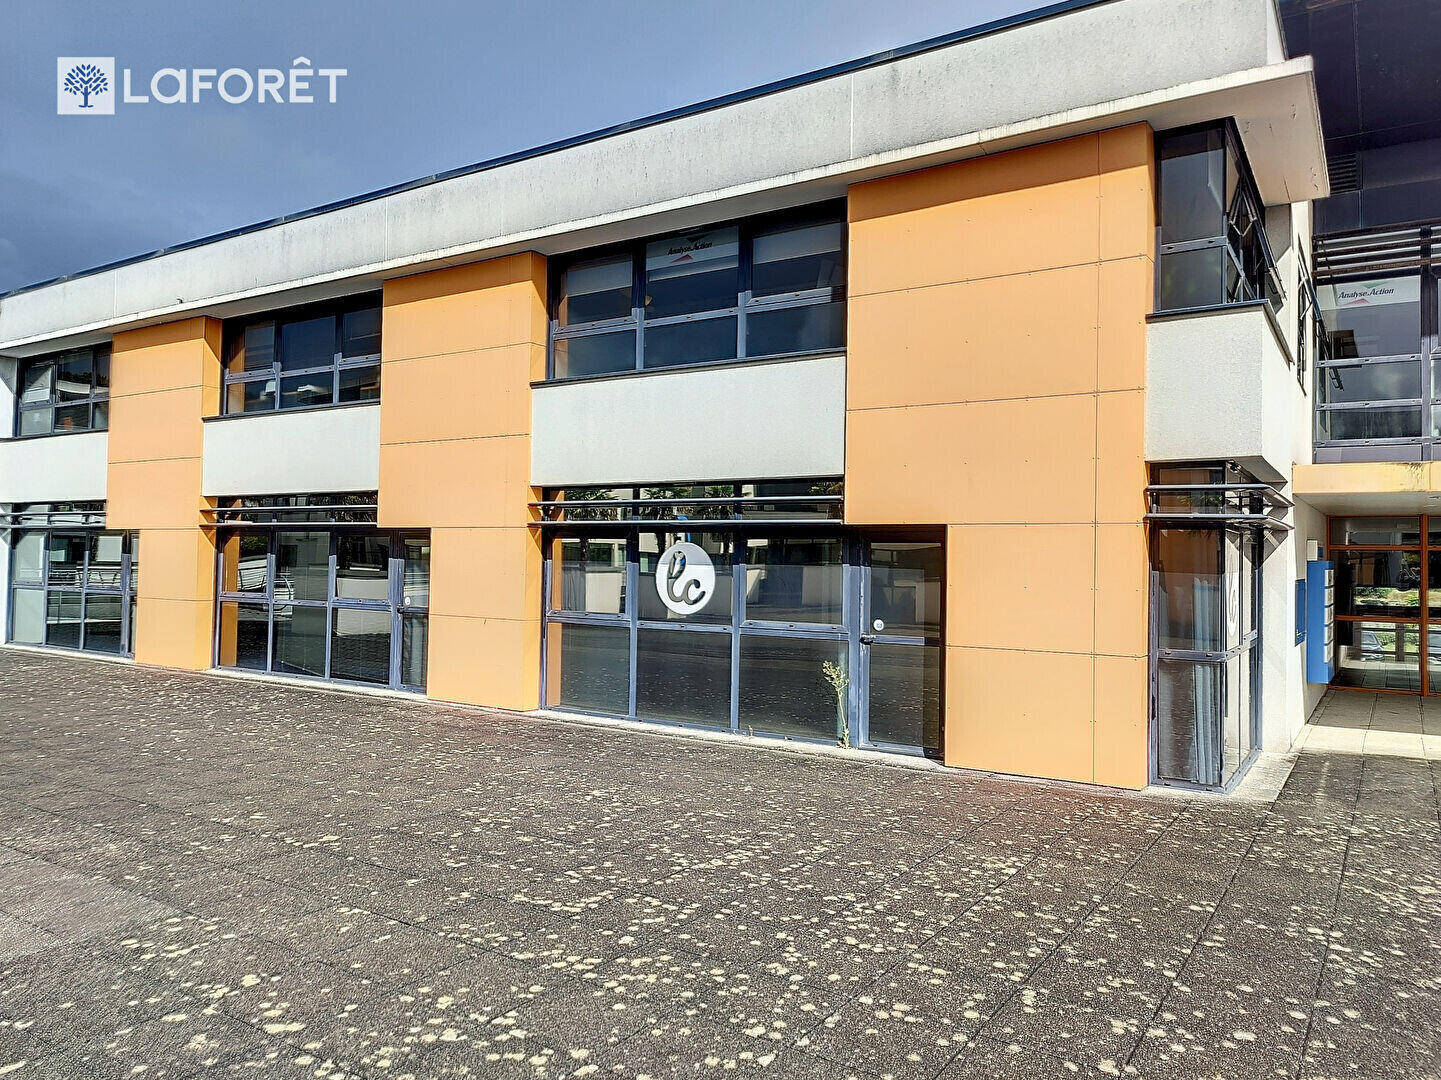 Vente bureaux de 113m² en RDC +parking à Lorient 